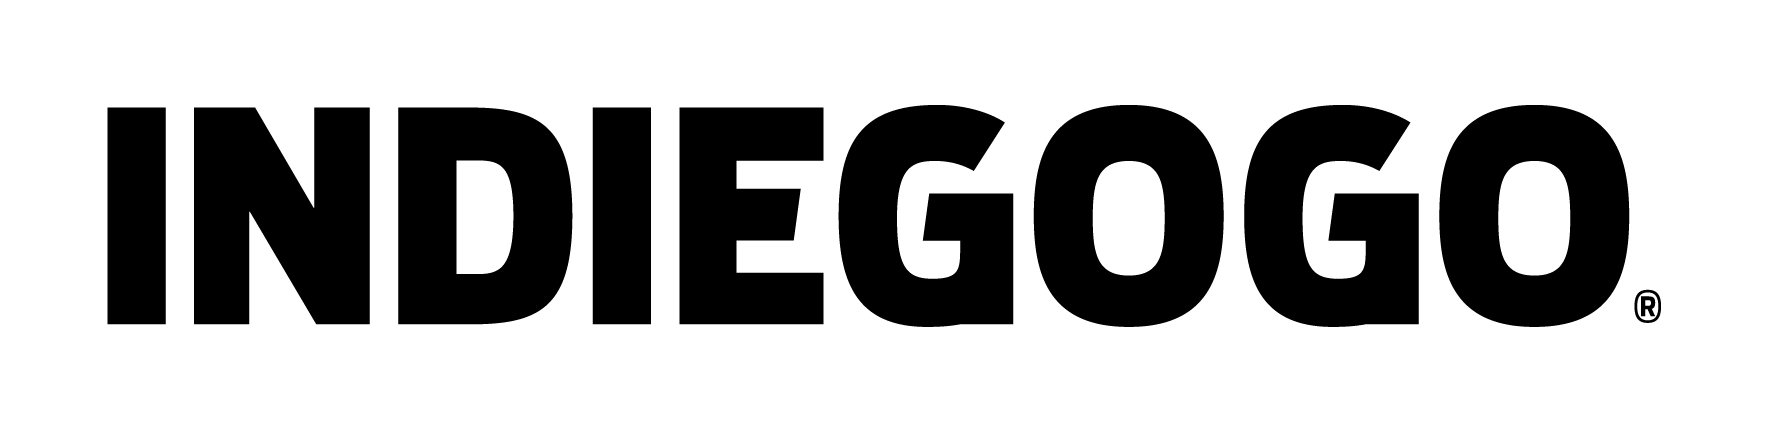 Indiegogo Logo Black